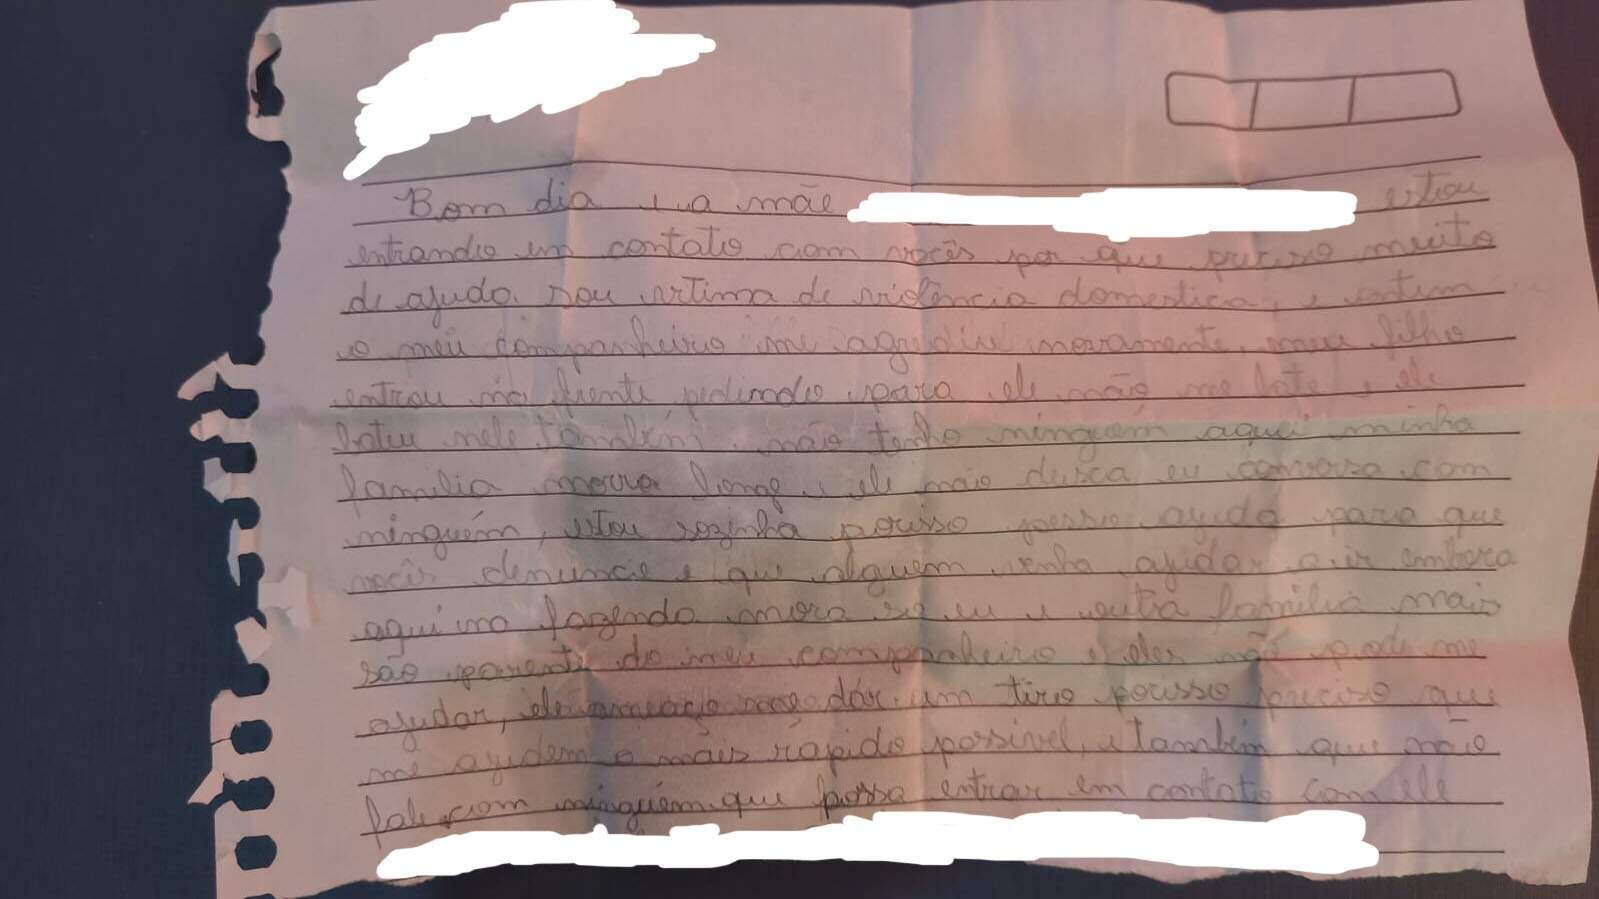 “Ameaçou me dar tiro”, disse mulher em carta levada para escola de filho 